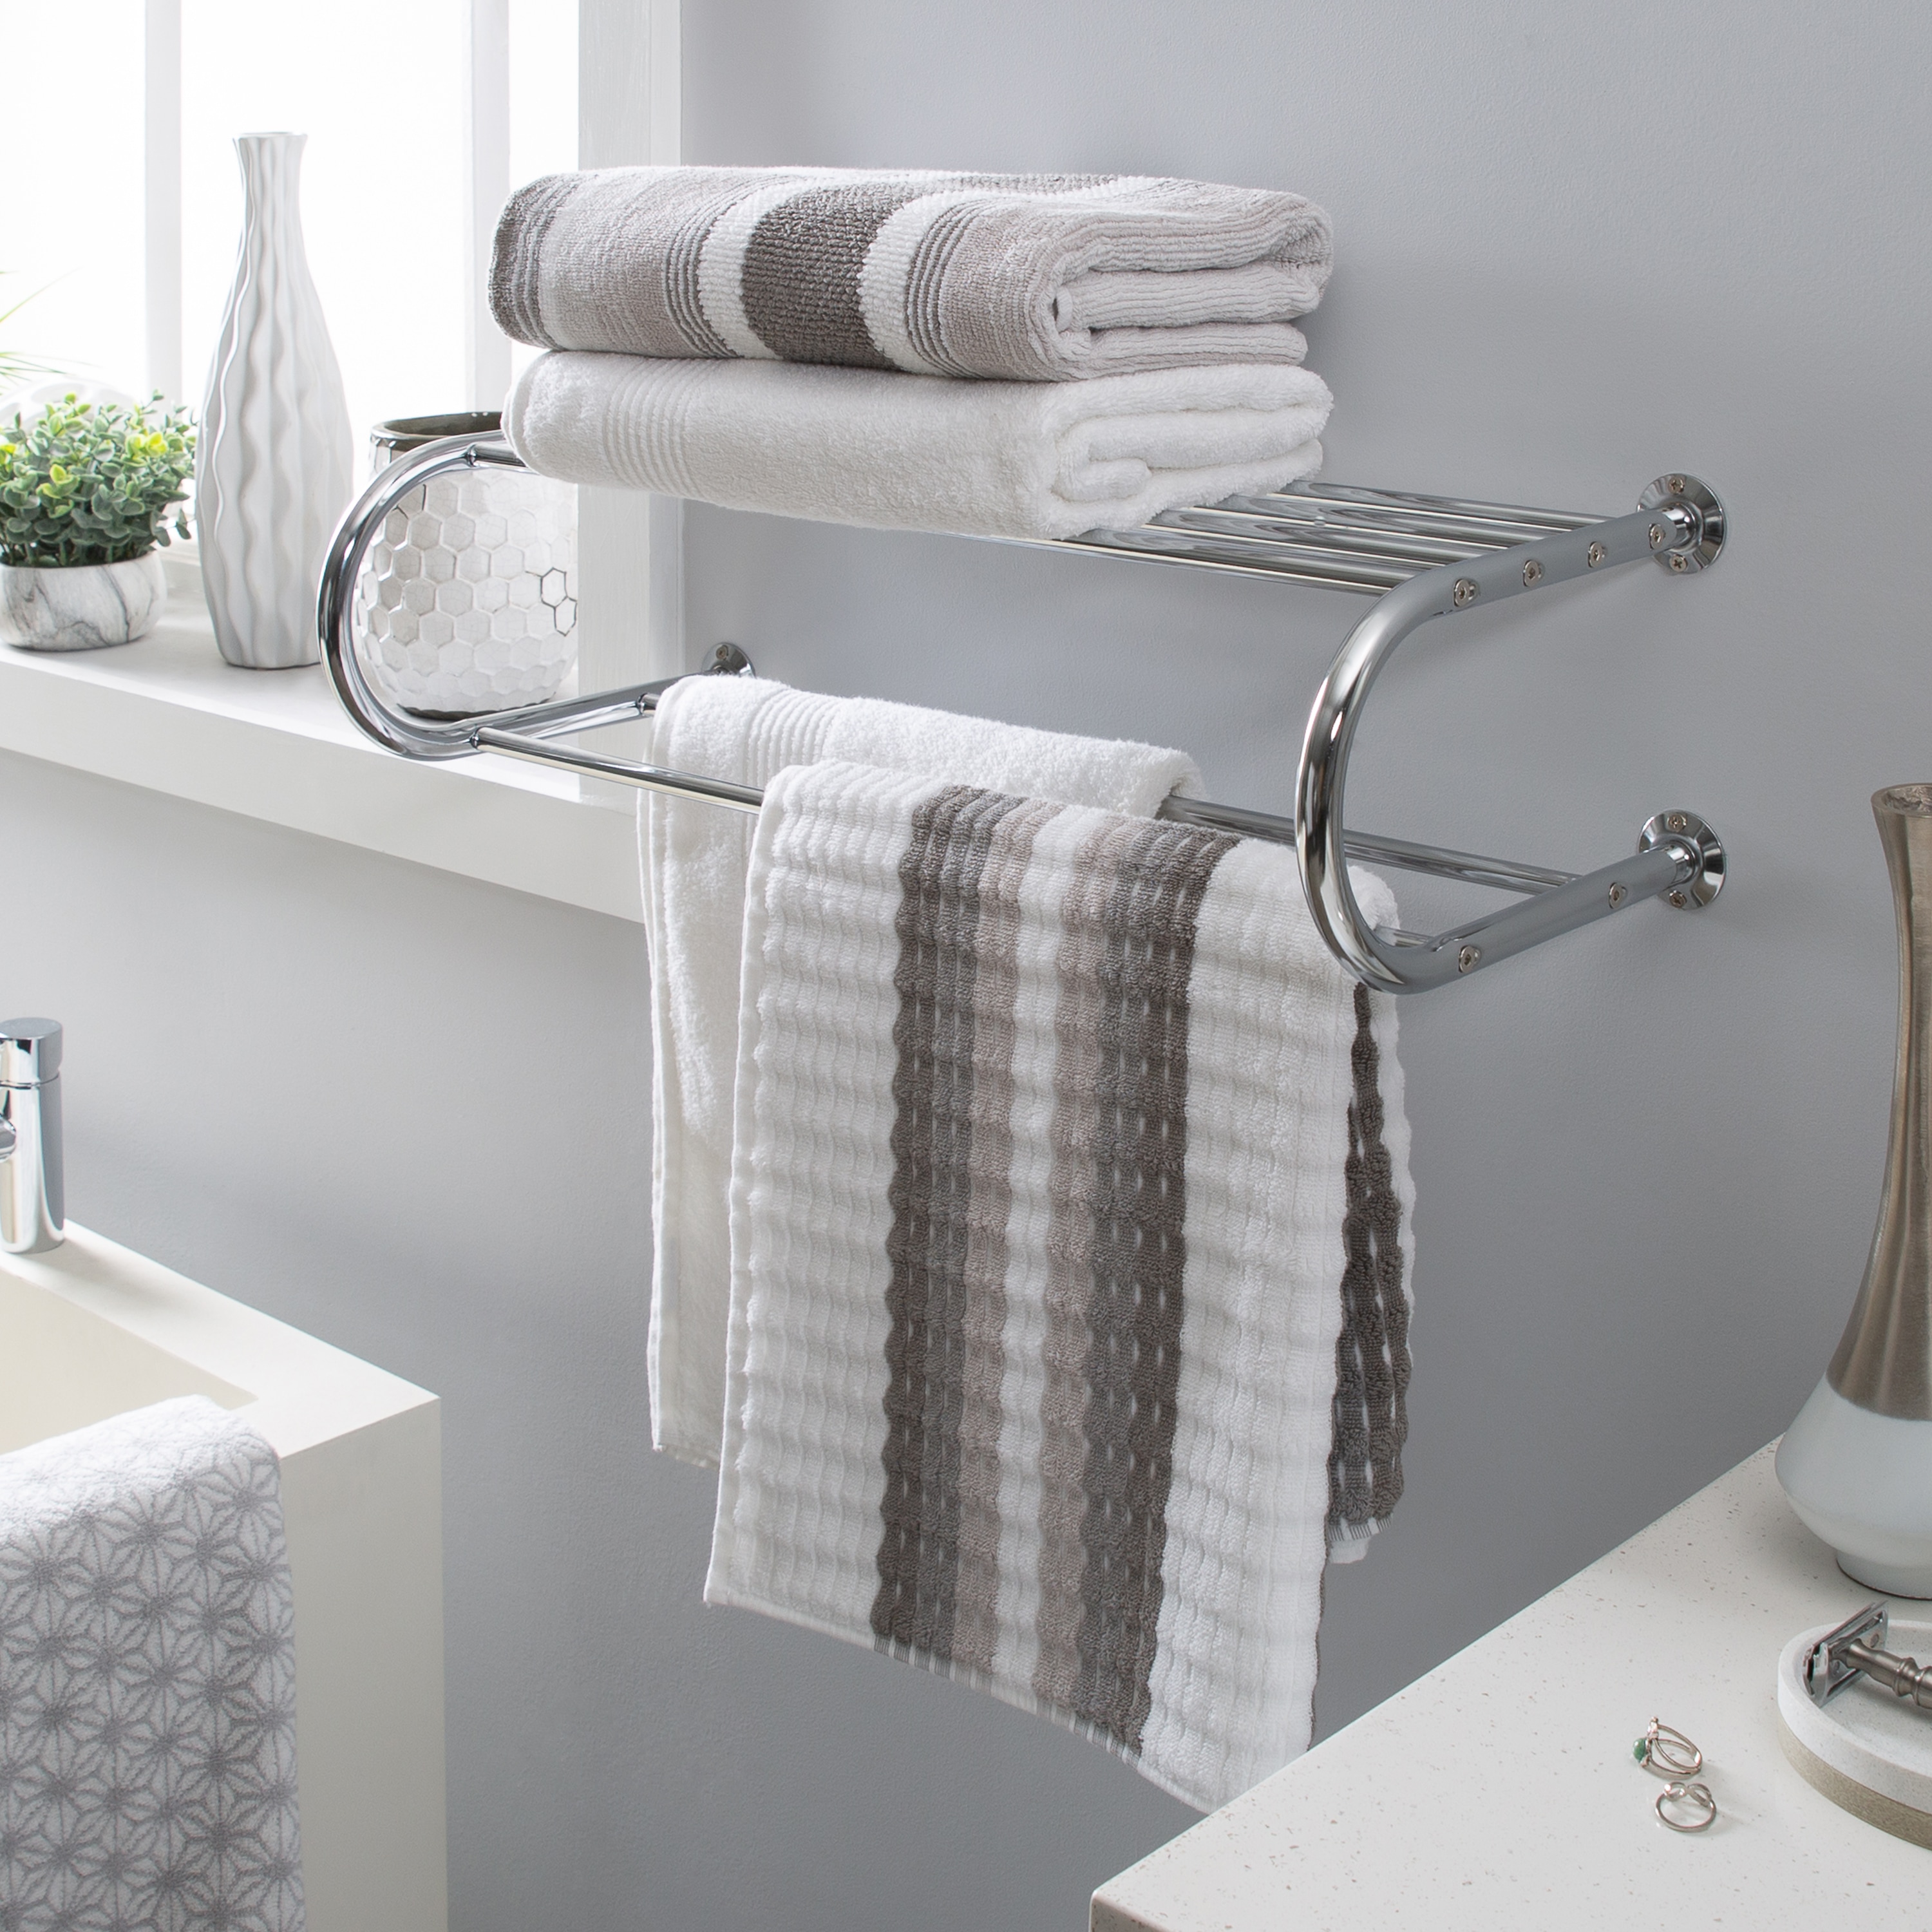 Elie Bathroom Shelf with Towel Bar in Brushed Nickel